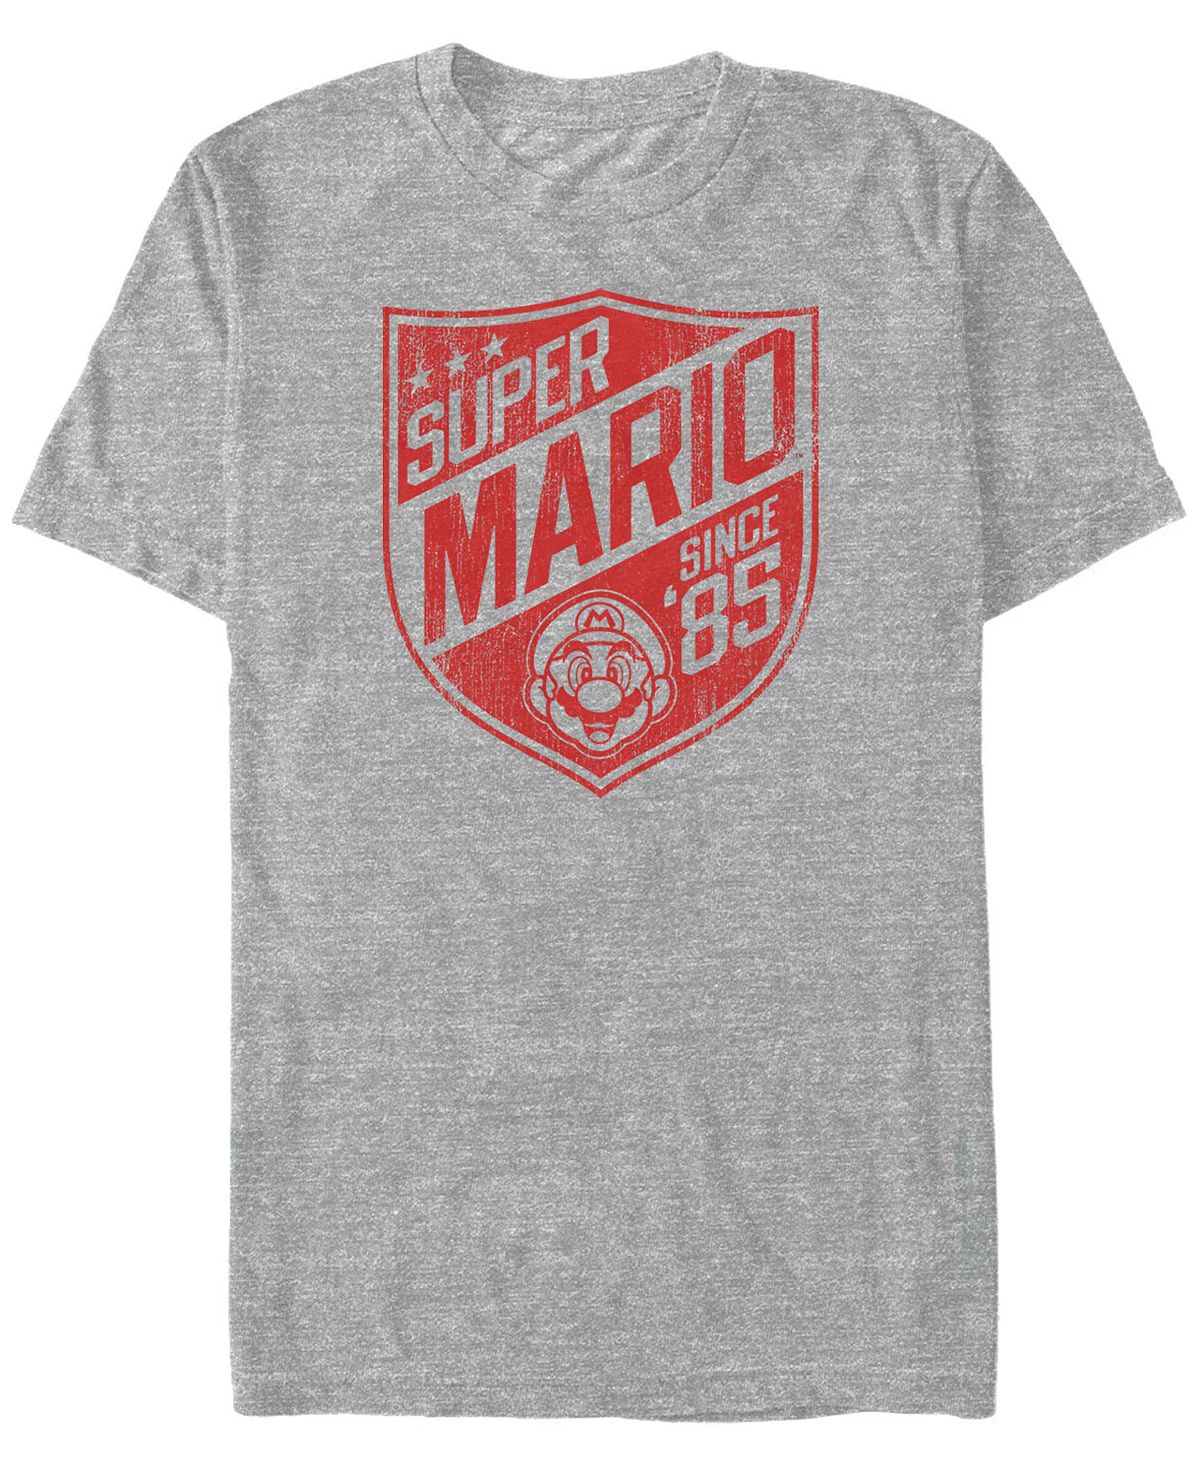 Мужская футболка с коротким рукавом и логотипом nintendo super mario с '85 Fifth Sun, мульти рюкзак луиджи и йоши mario голубой 3